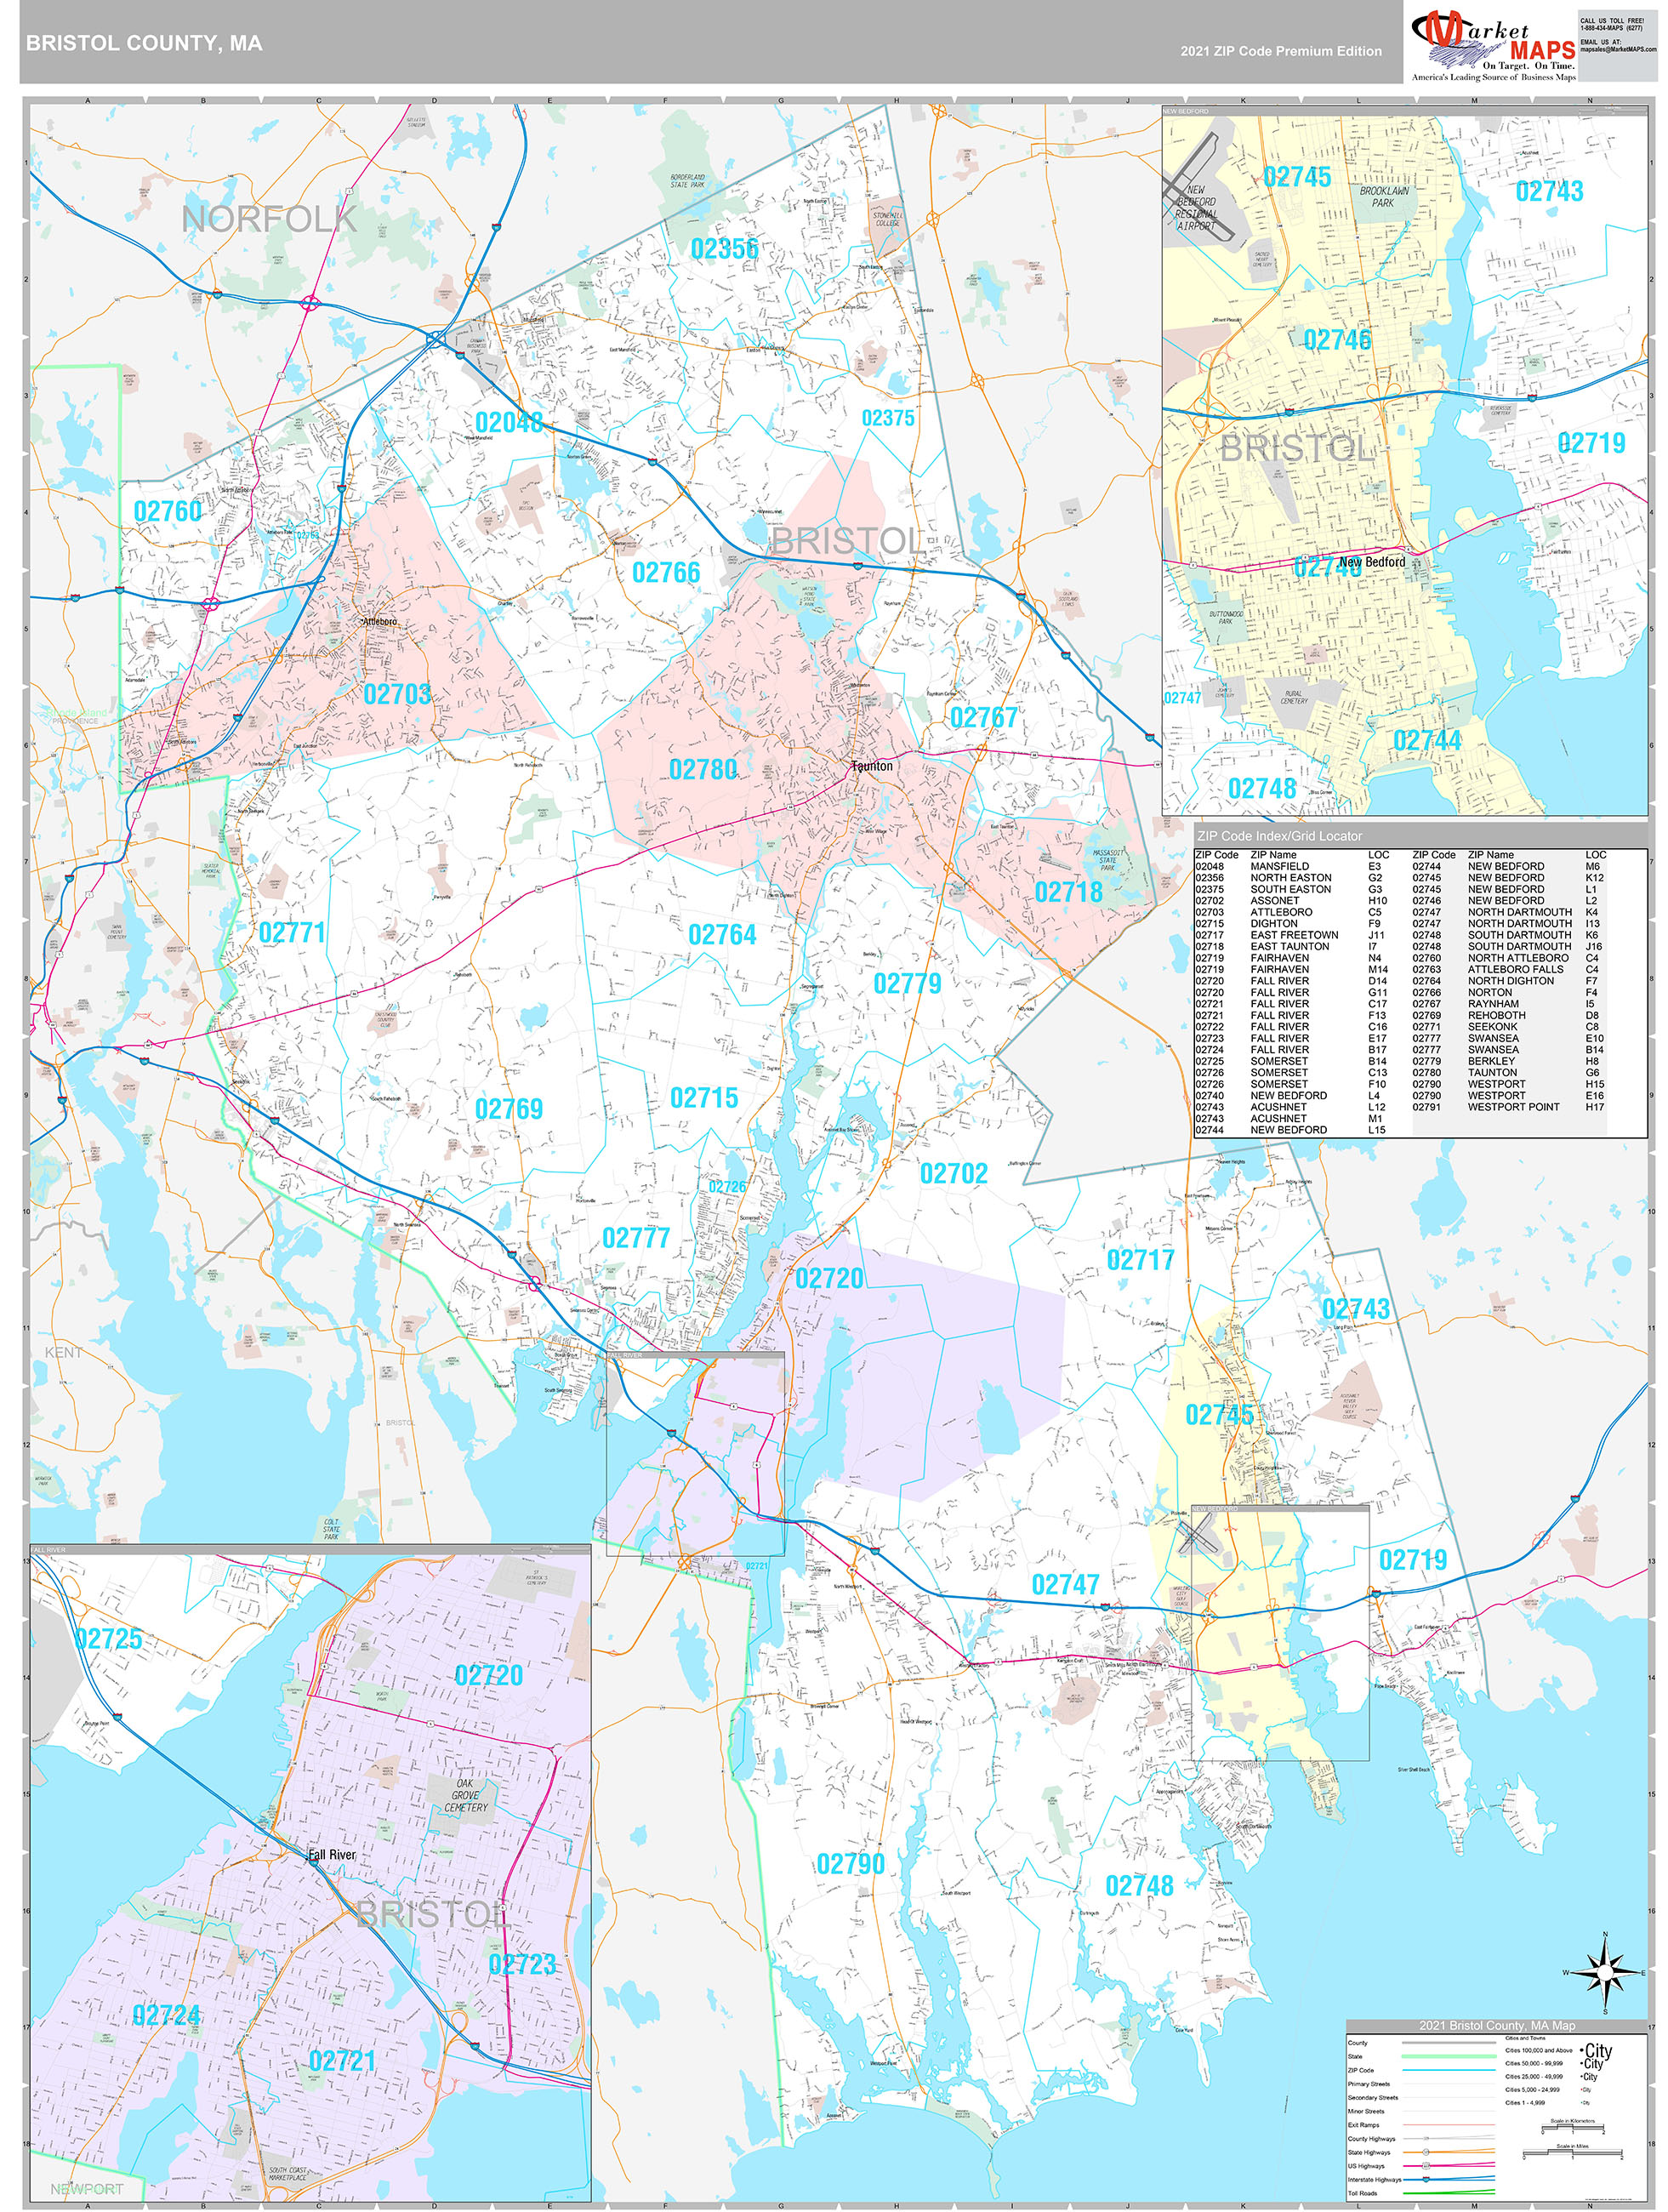 Bristol County, MA Wall Map Premium Style by MarketMAPS - MapSales